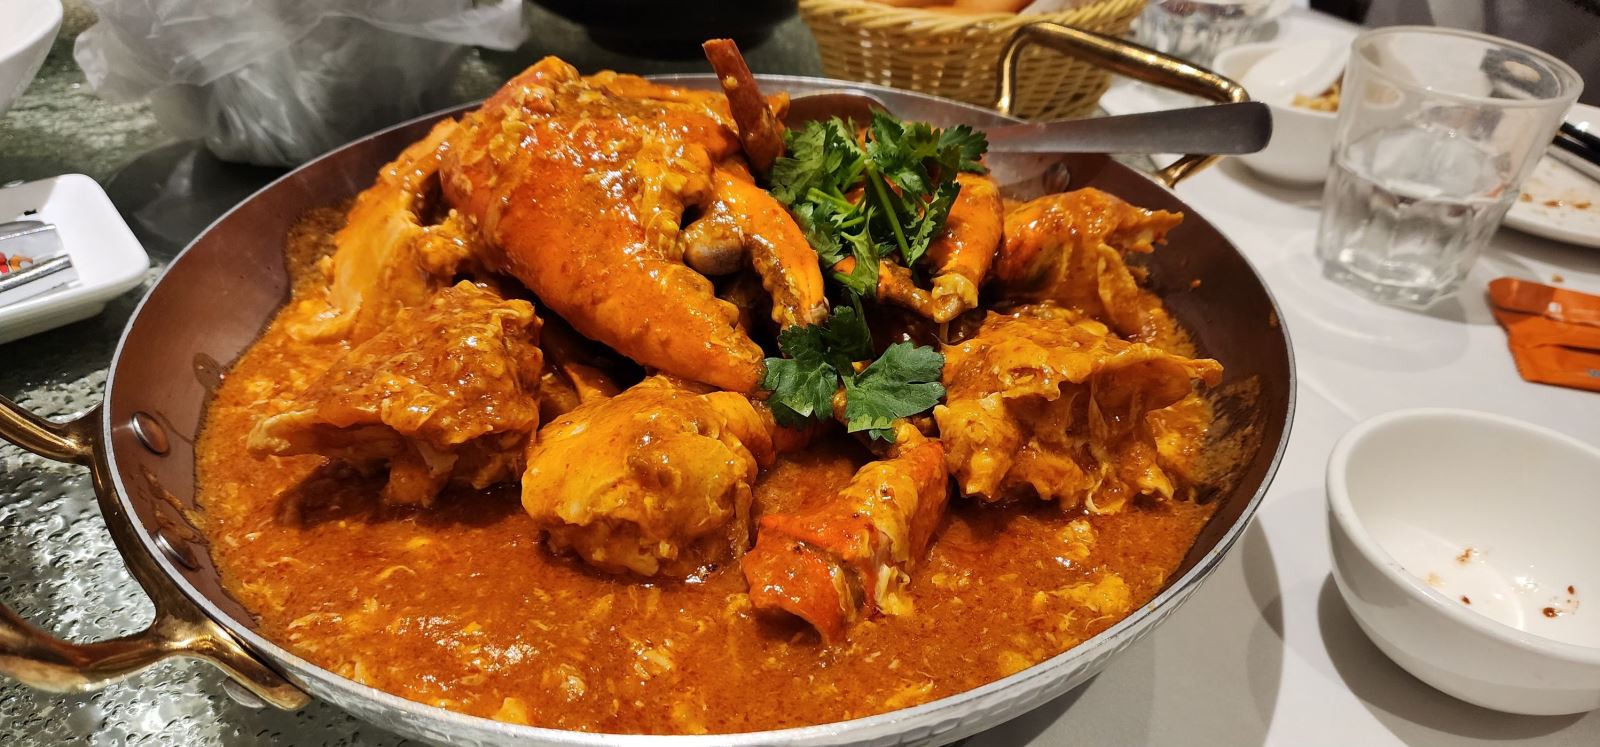 Món cua sốt ớt Singapore chắc chắn là món ăn không thể bỏ lỡ đối với những tín đồ đam mê hải sản